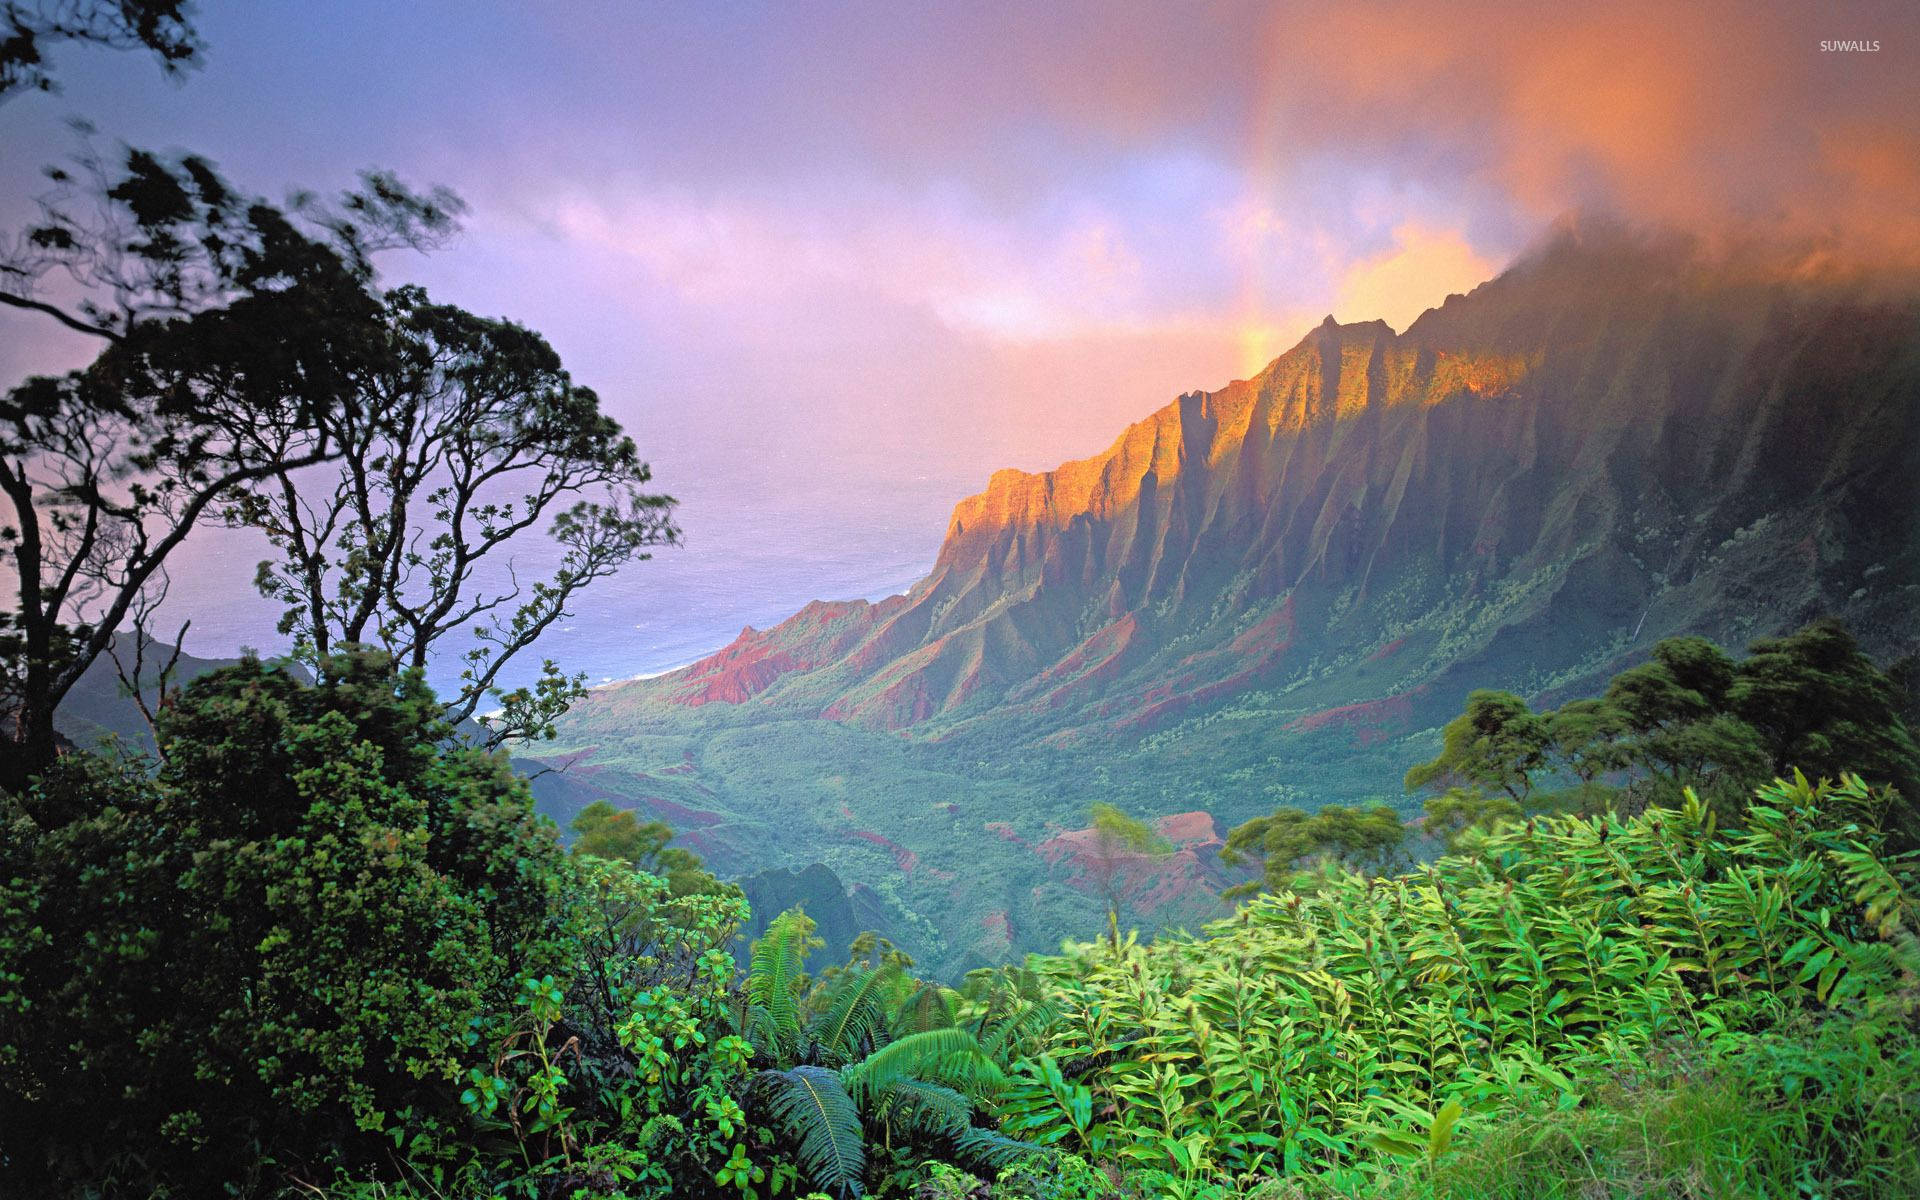 Hawaii Kalalau Valley